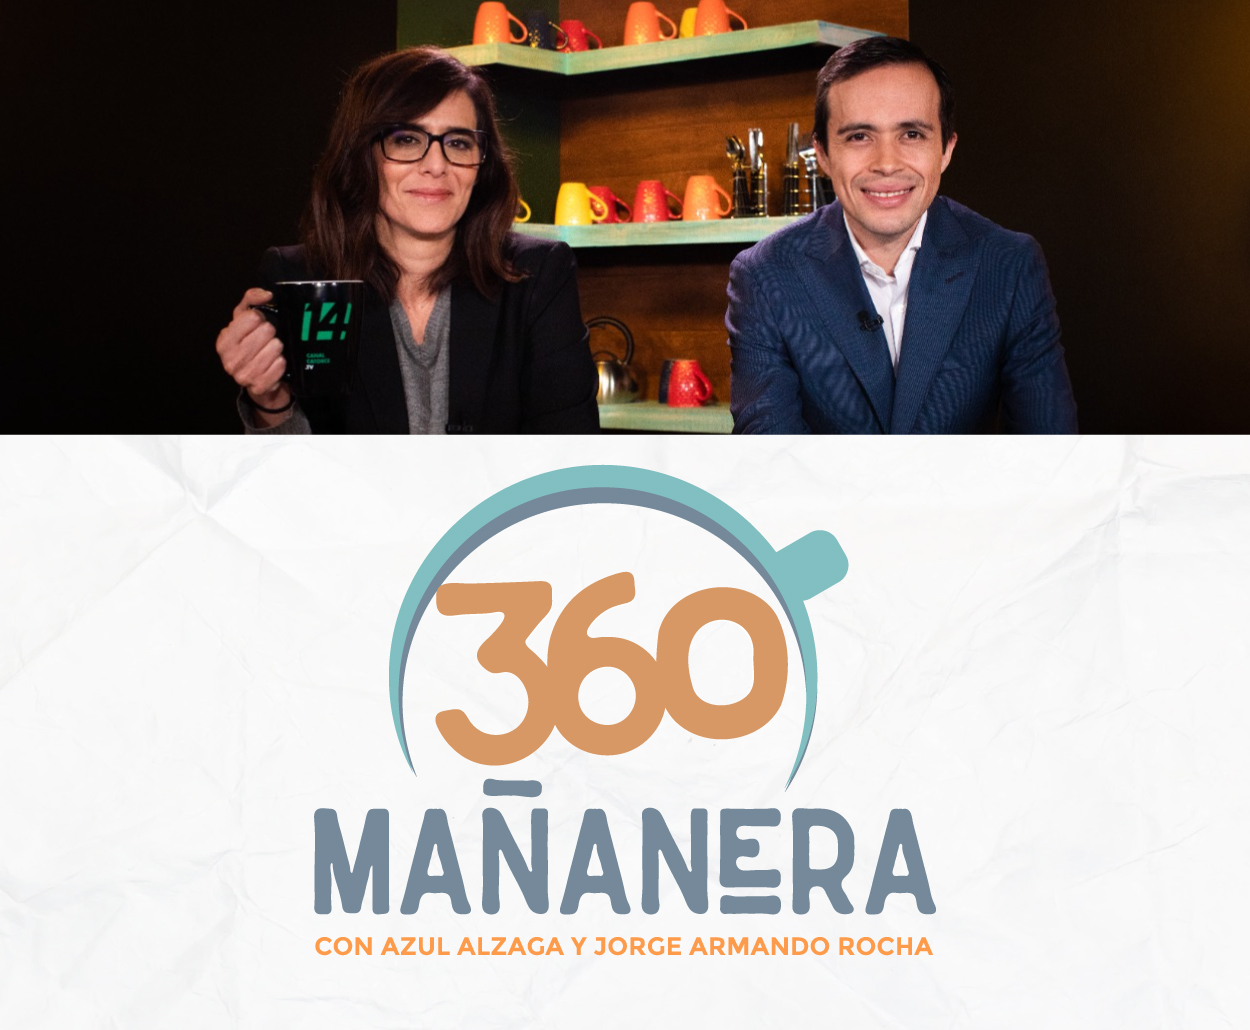 Canal Catorce del SPR estrena Mañanera 360, programa de revista informativa sobre la Conferencia Matutina Presidencial